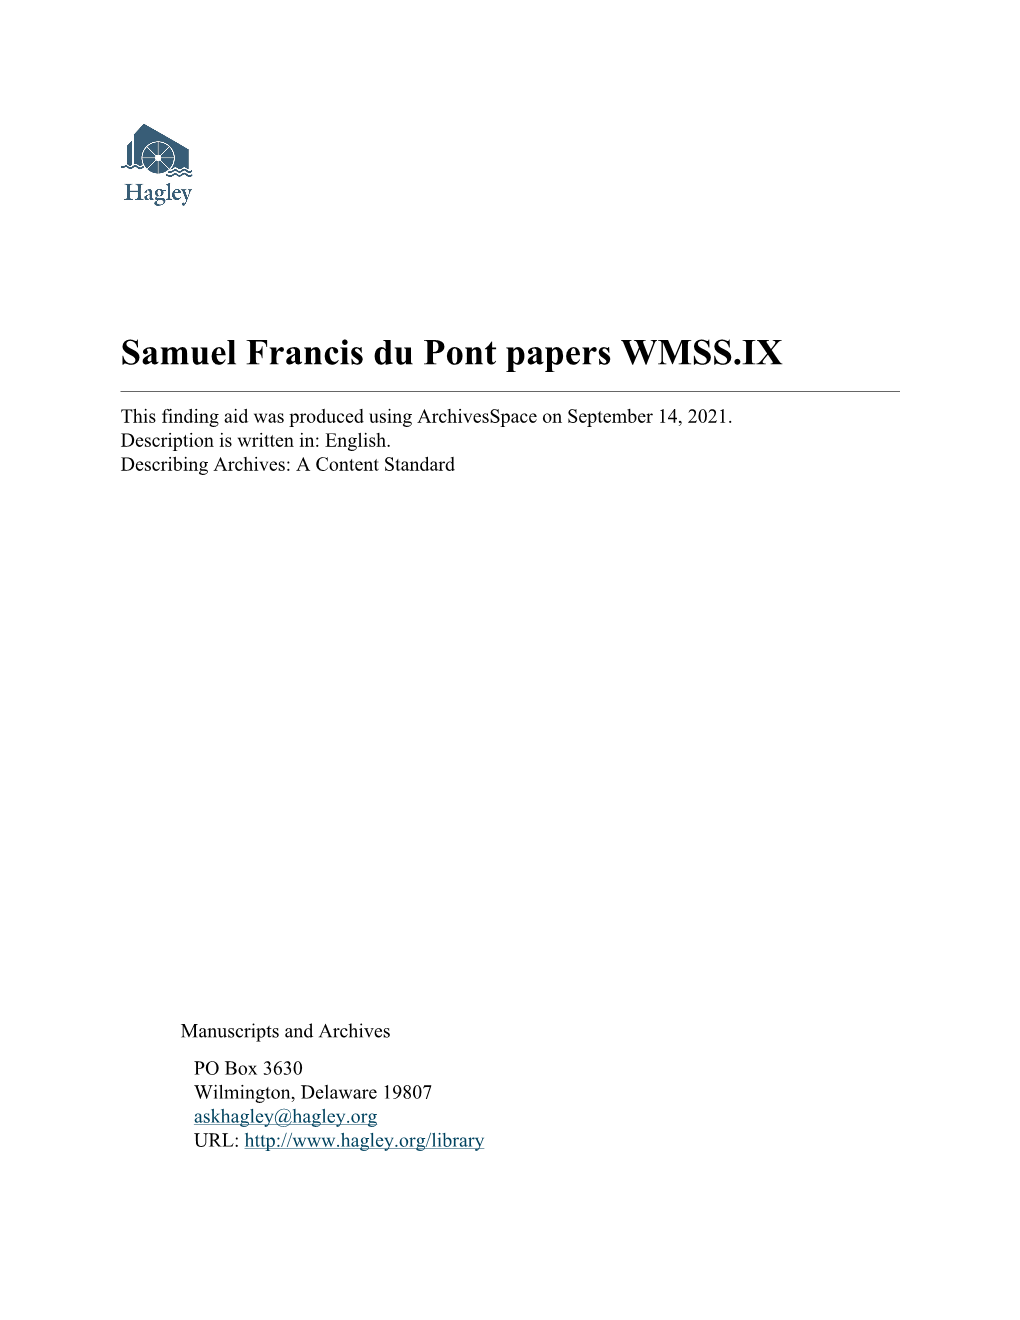 Samuel Francis Du Pont Papers WMSS.IX